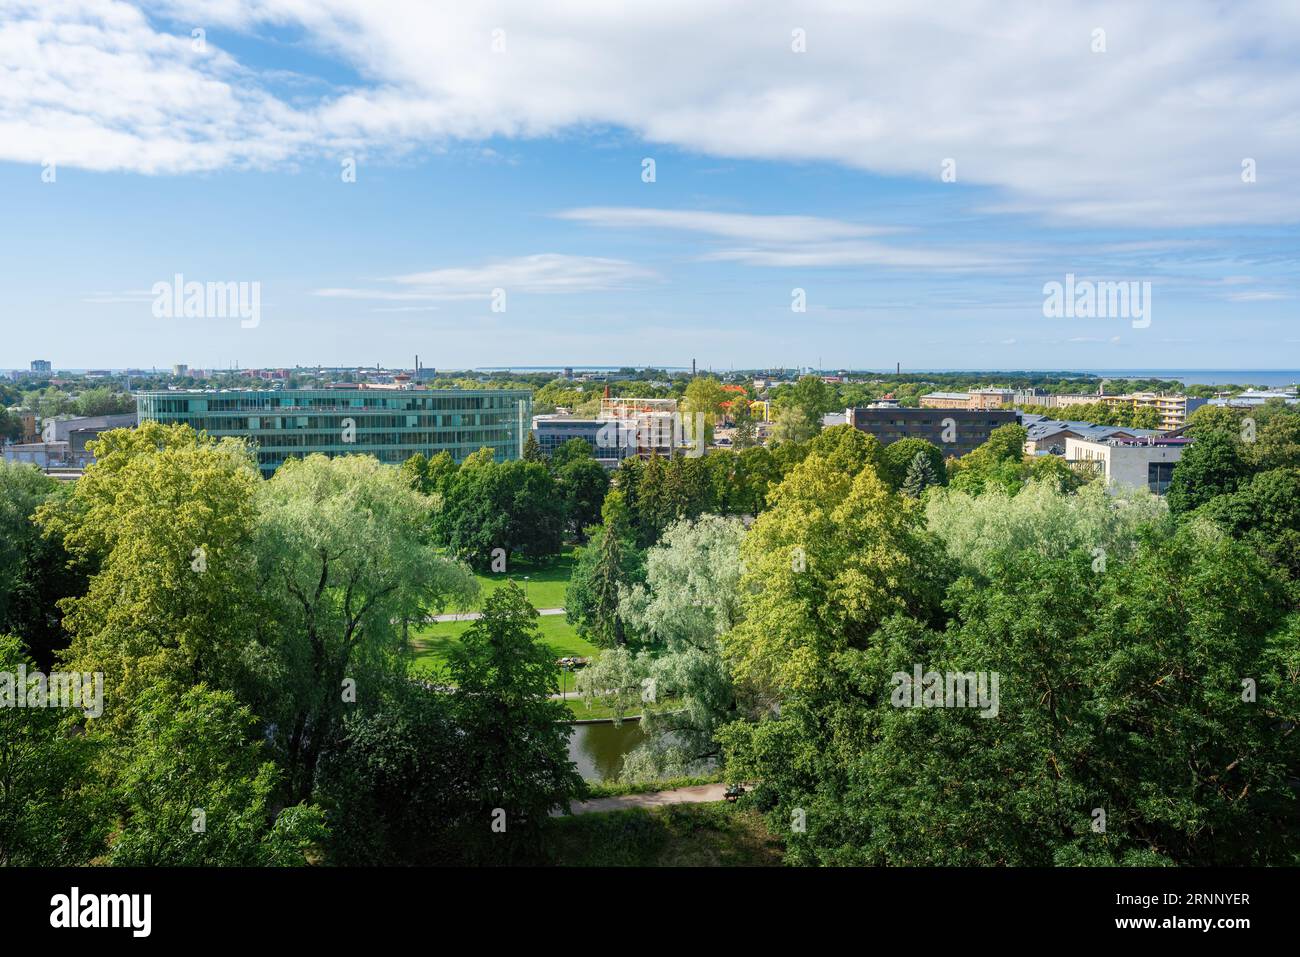 Vue depuis la plate-forme d'observation Piiskopi avec le parc Snelli - Tallinn, Estonie Banque D'Images